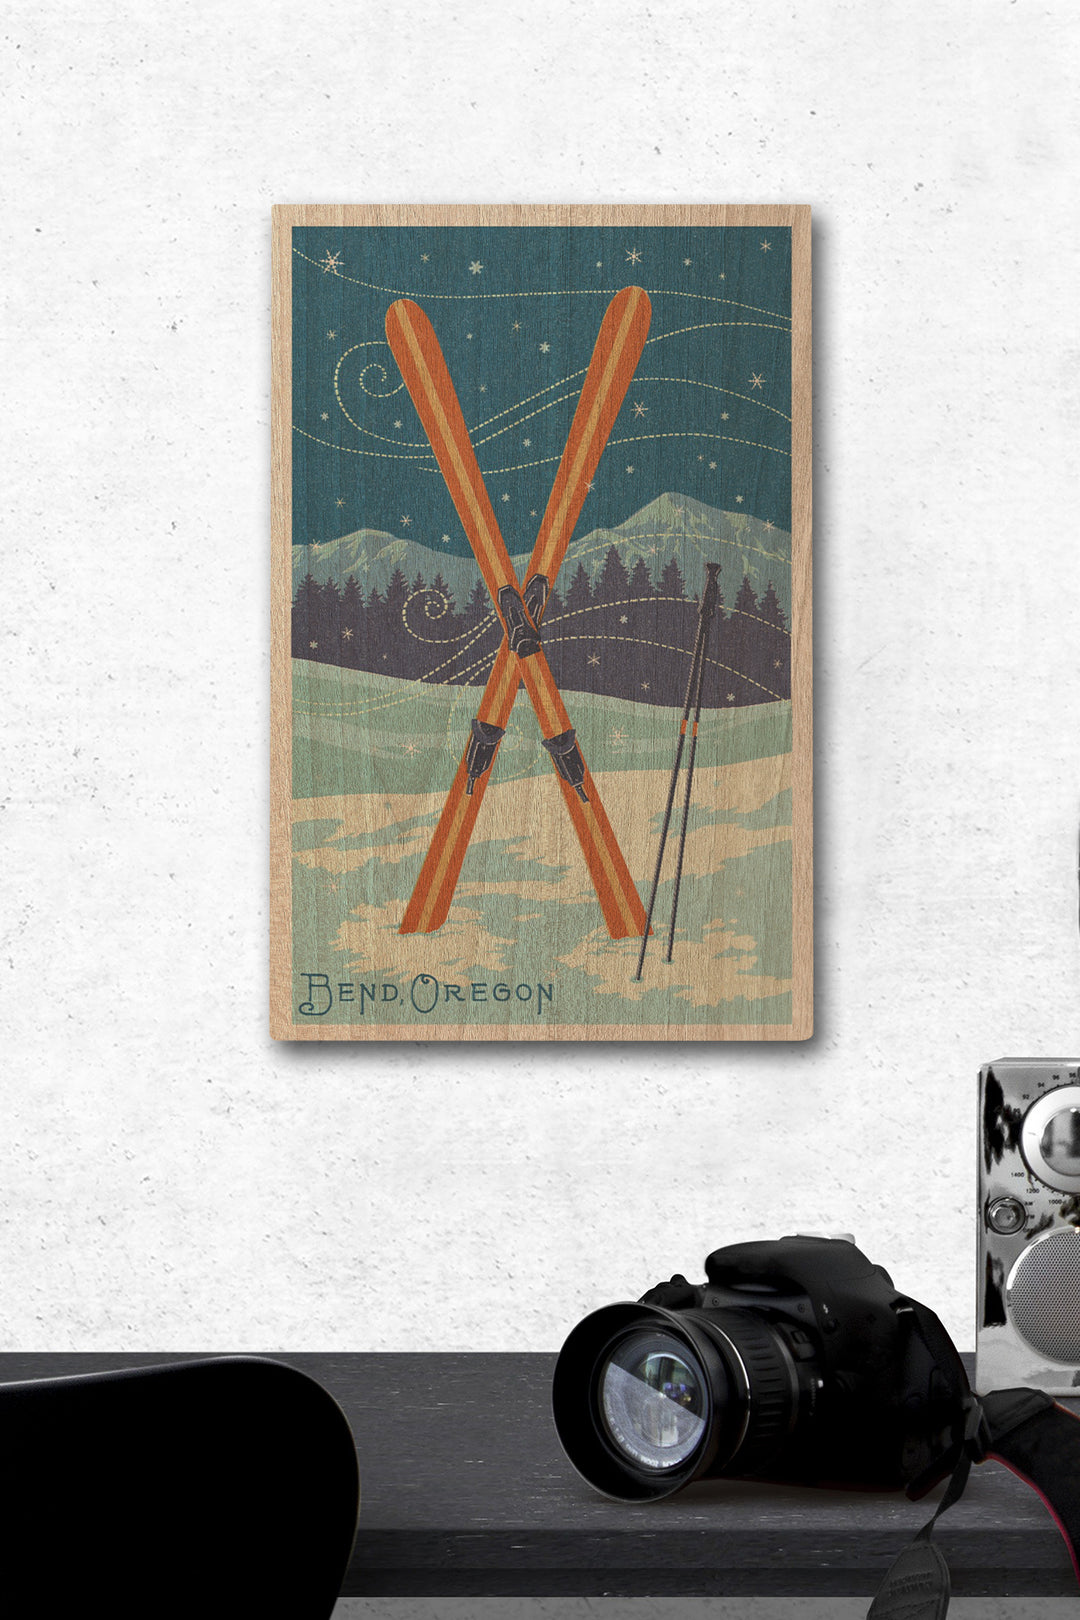 Bend, Oregon, Crossed Skis, Letterpress, Lantern Press Artwork, Wood Signs and Postcards